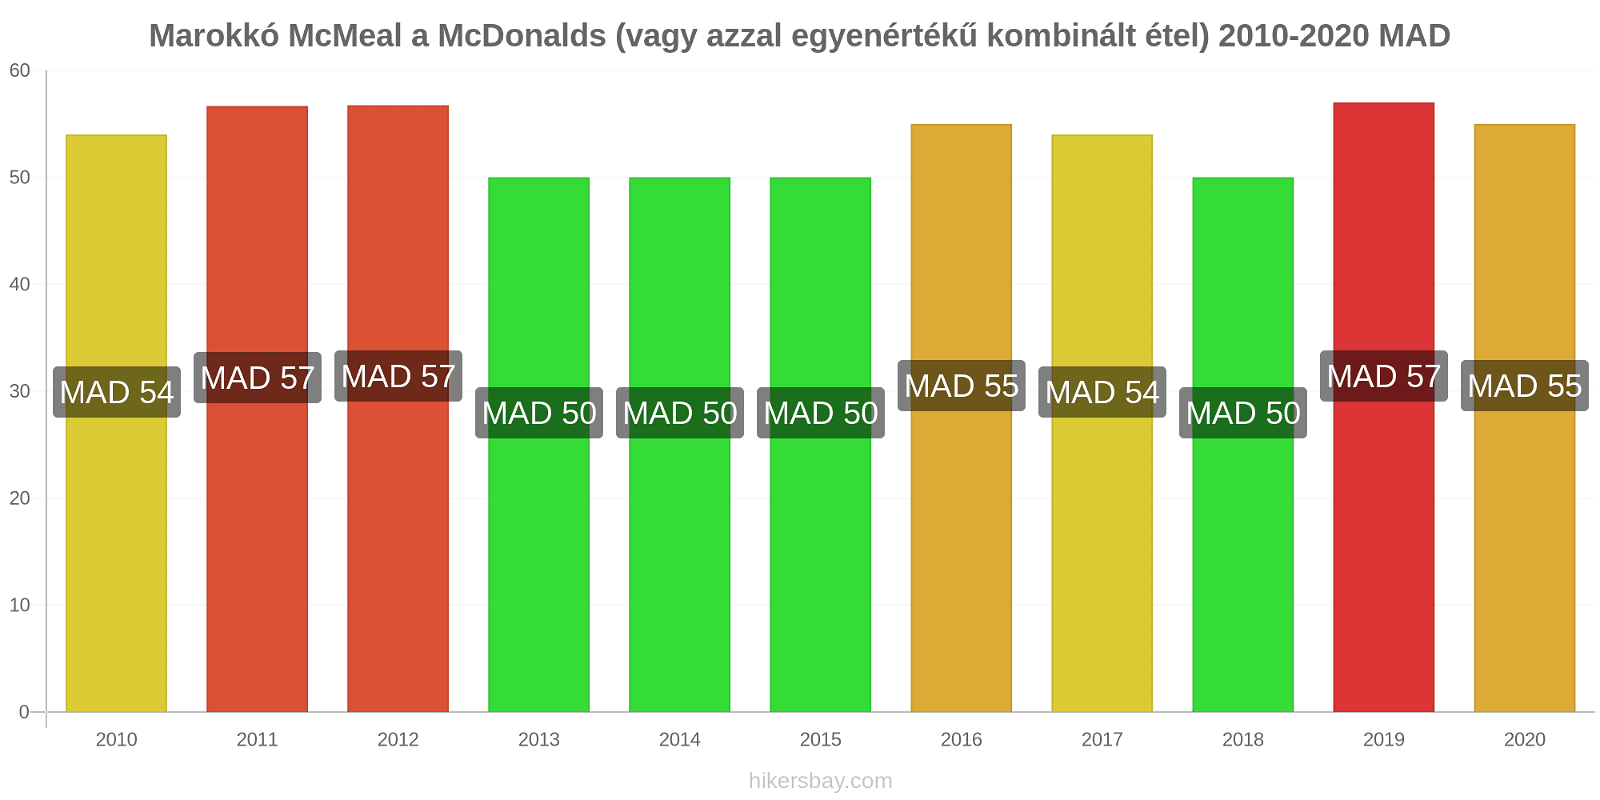 Marokkó árváltozások McMeal a McDonalds (vagy azzal egyenértékű kombinált étel) hikersbay.com